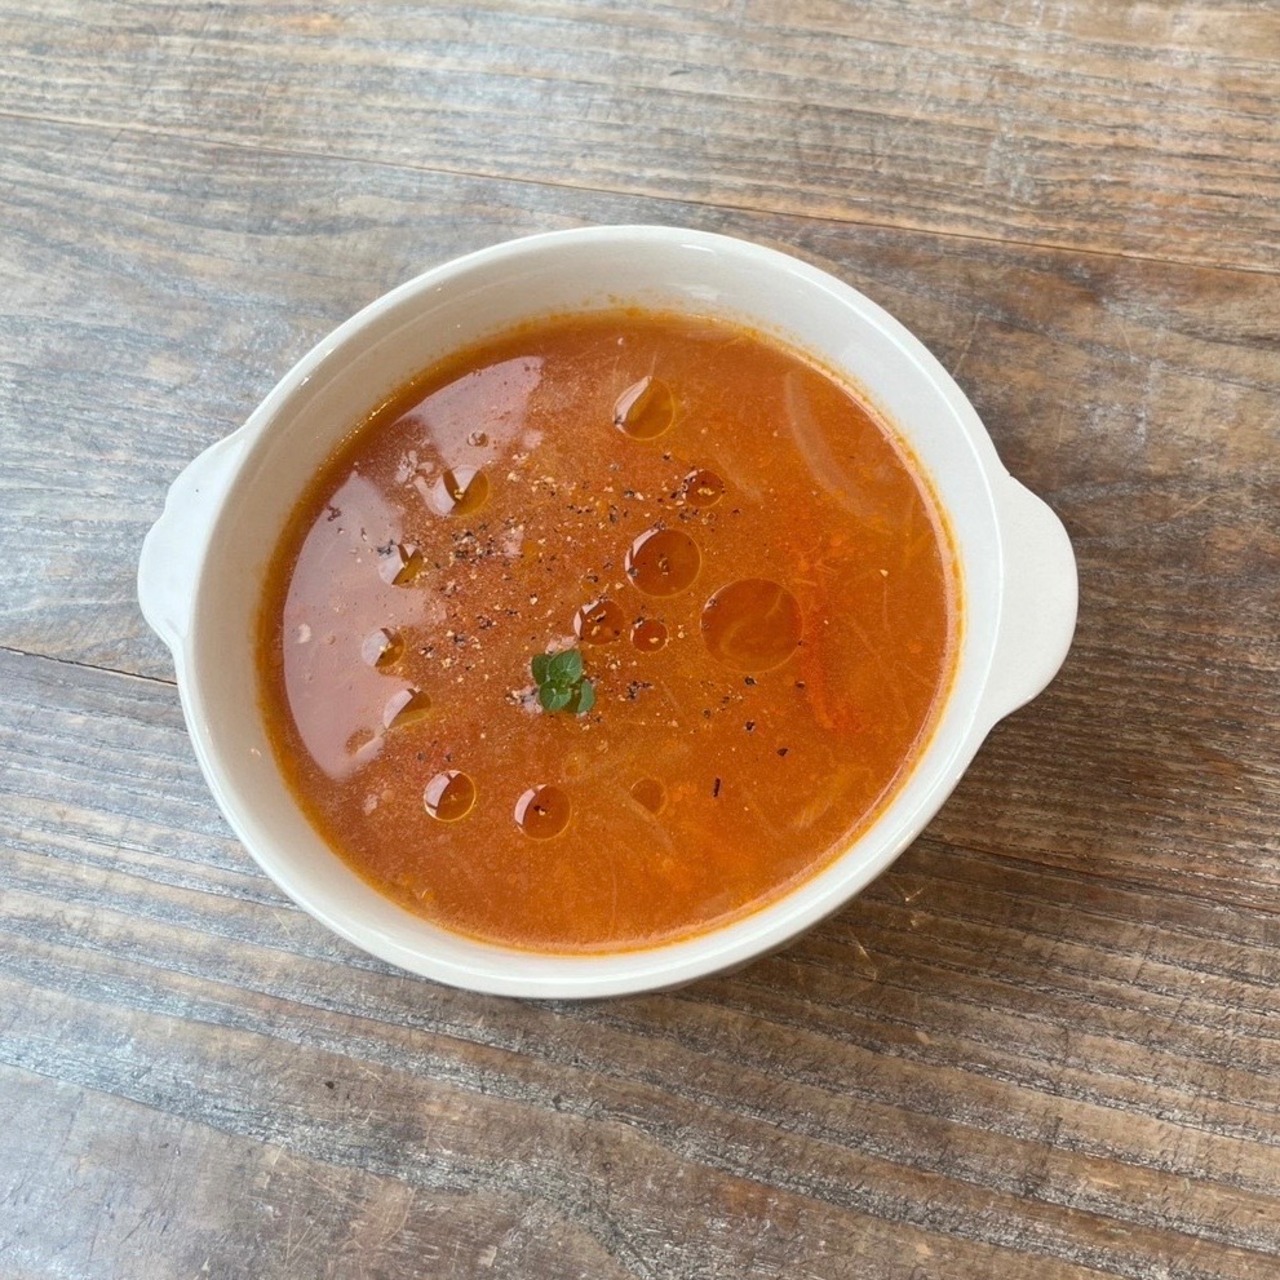 完熟トマトのスープ 【ikedayaBBQstyle】